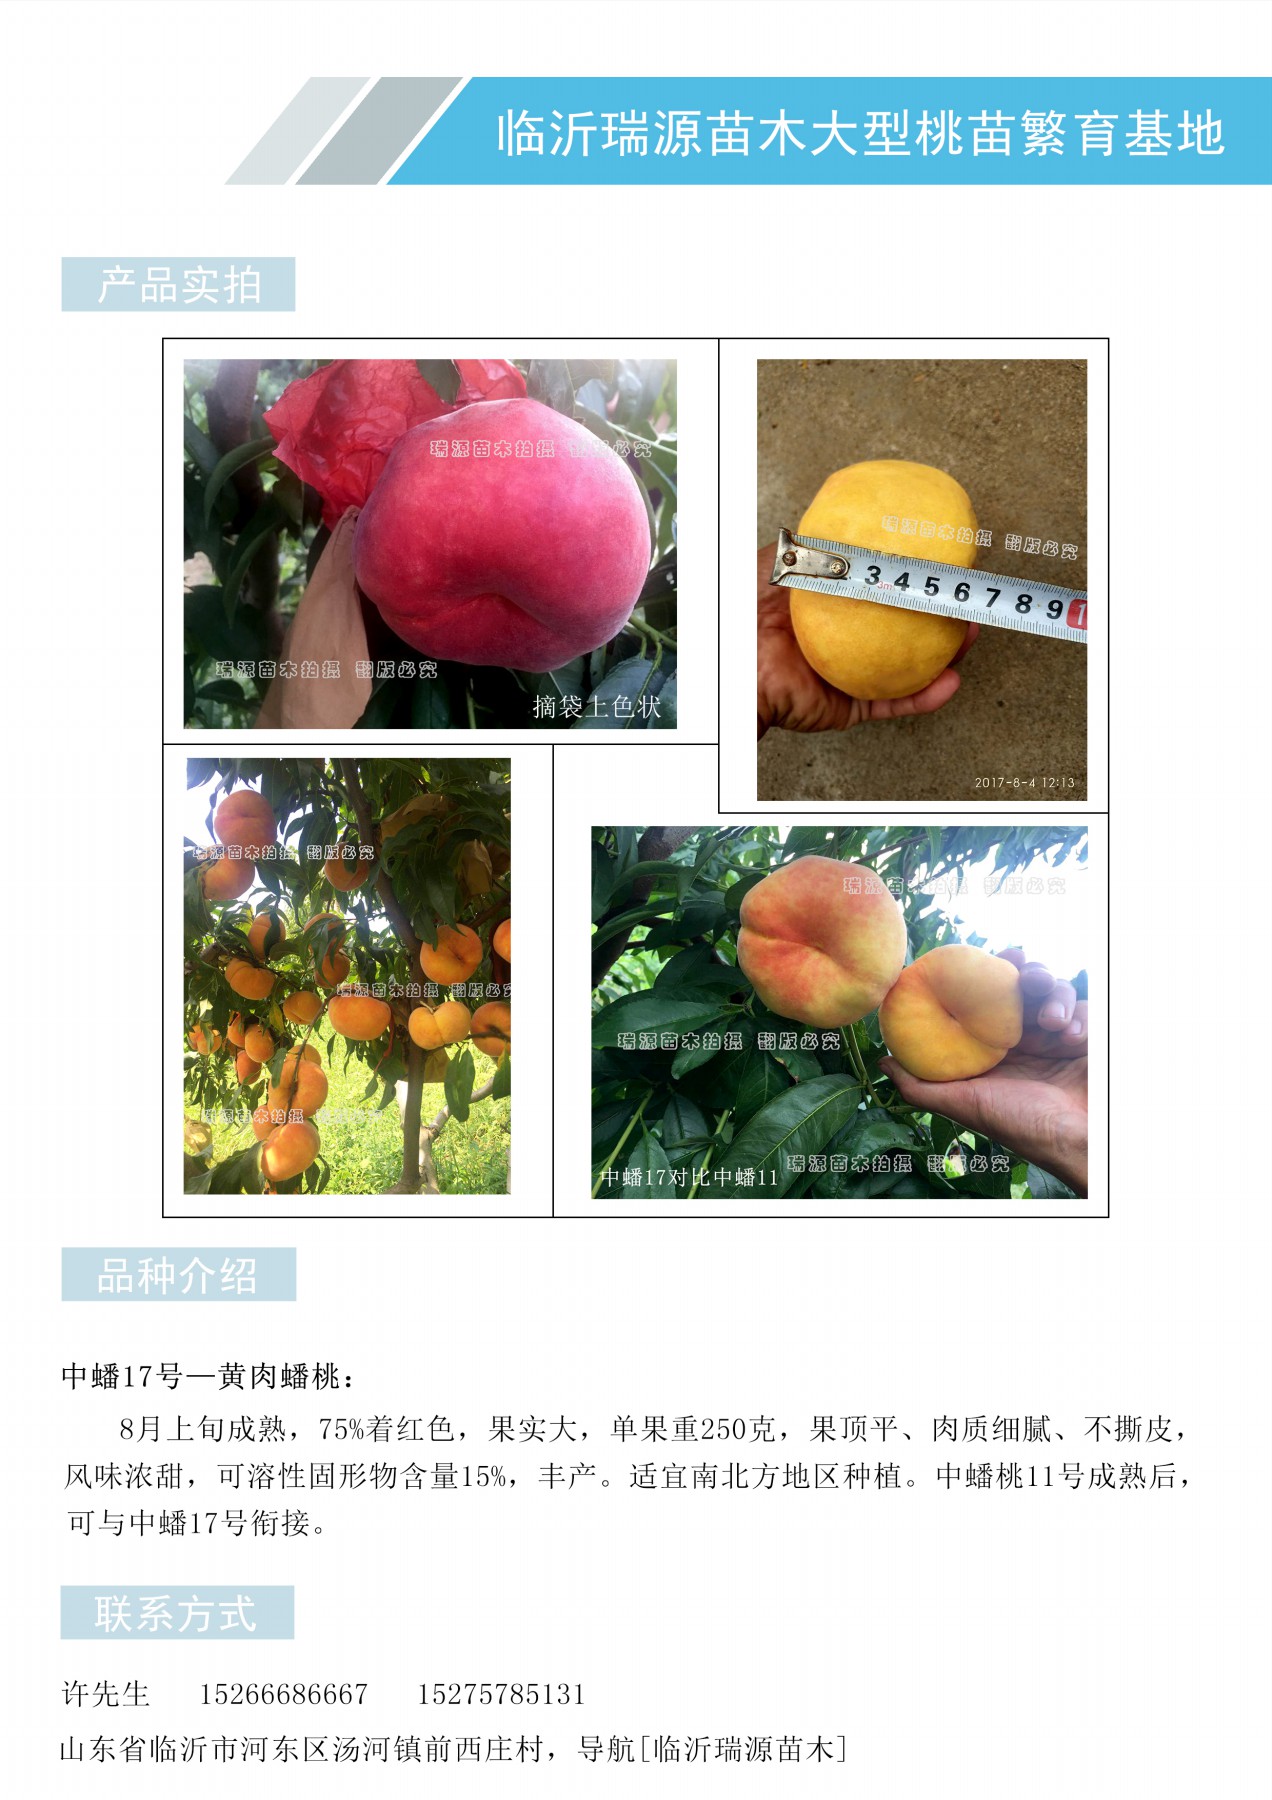 黄金蟠桃品种是河南郑州未来有发展前景的蟠桃优良品种